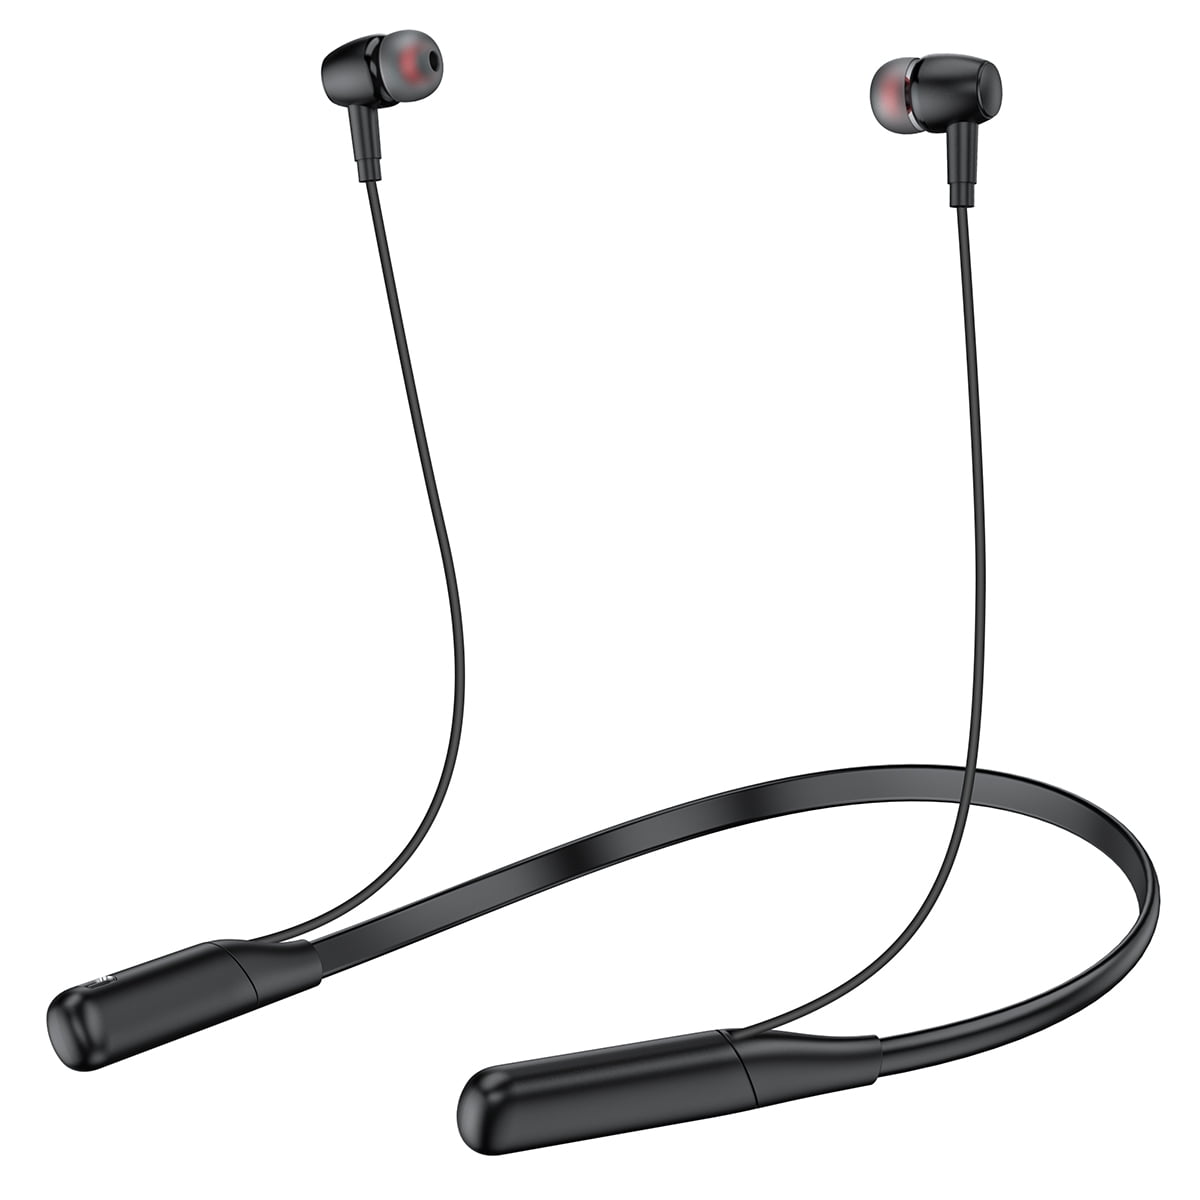 Bluetooth 5.0 Headphones, Wireless Sports Earphones Bass HD Stereo,  Neckband Design IPX5 Waterproof/Sweatproof in-Ear Earbuds w/Mic, CVC6.0  Noise